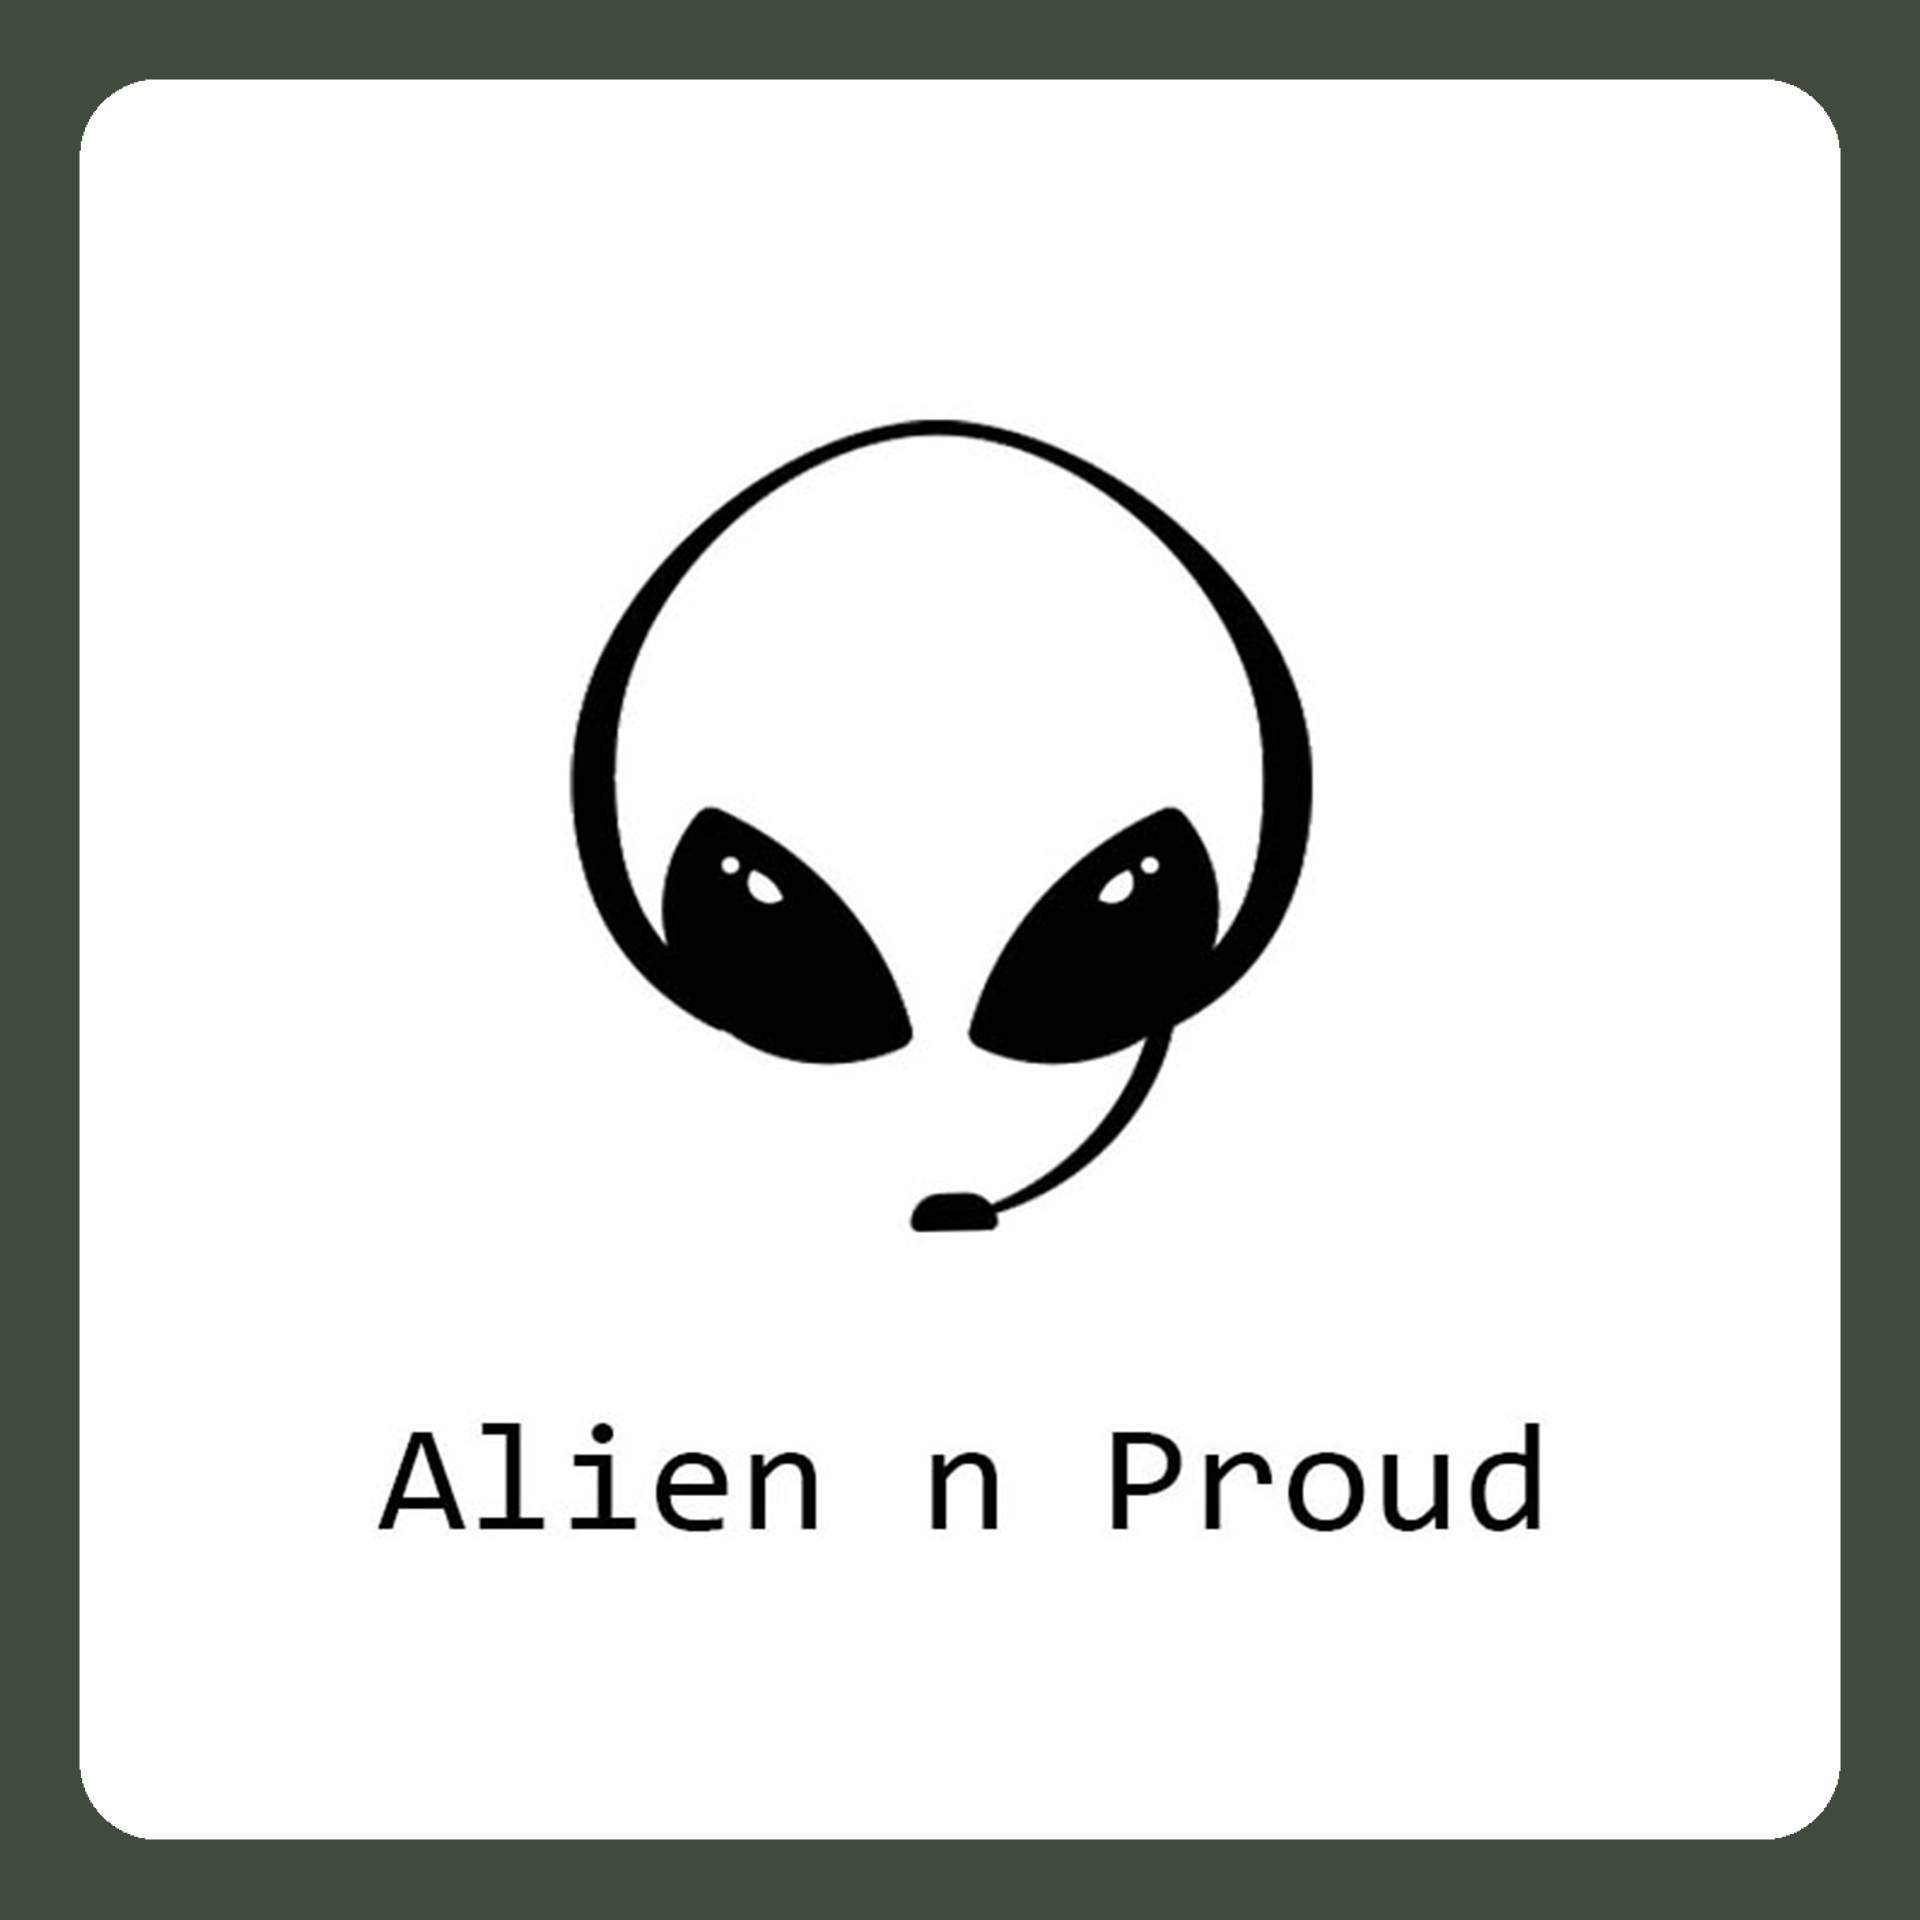 Alien ‘n Proud Logo